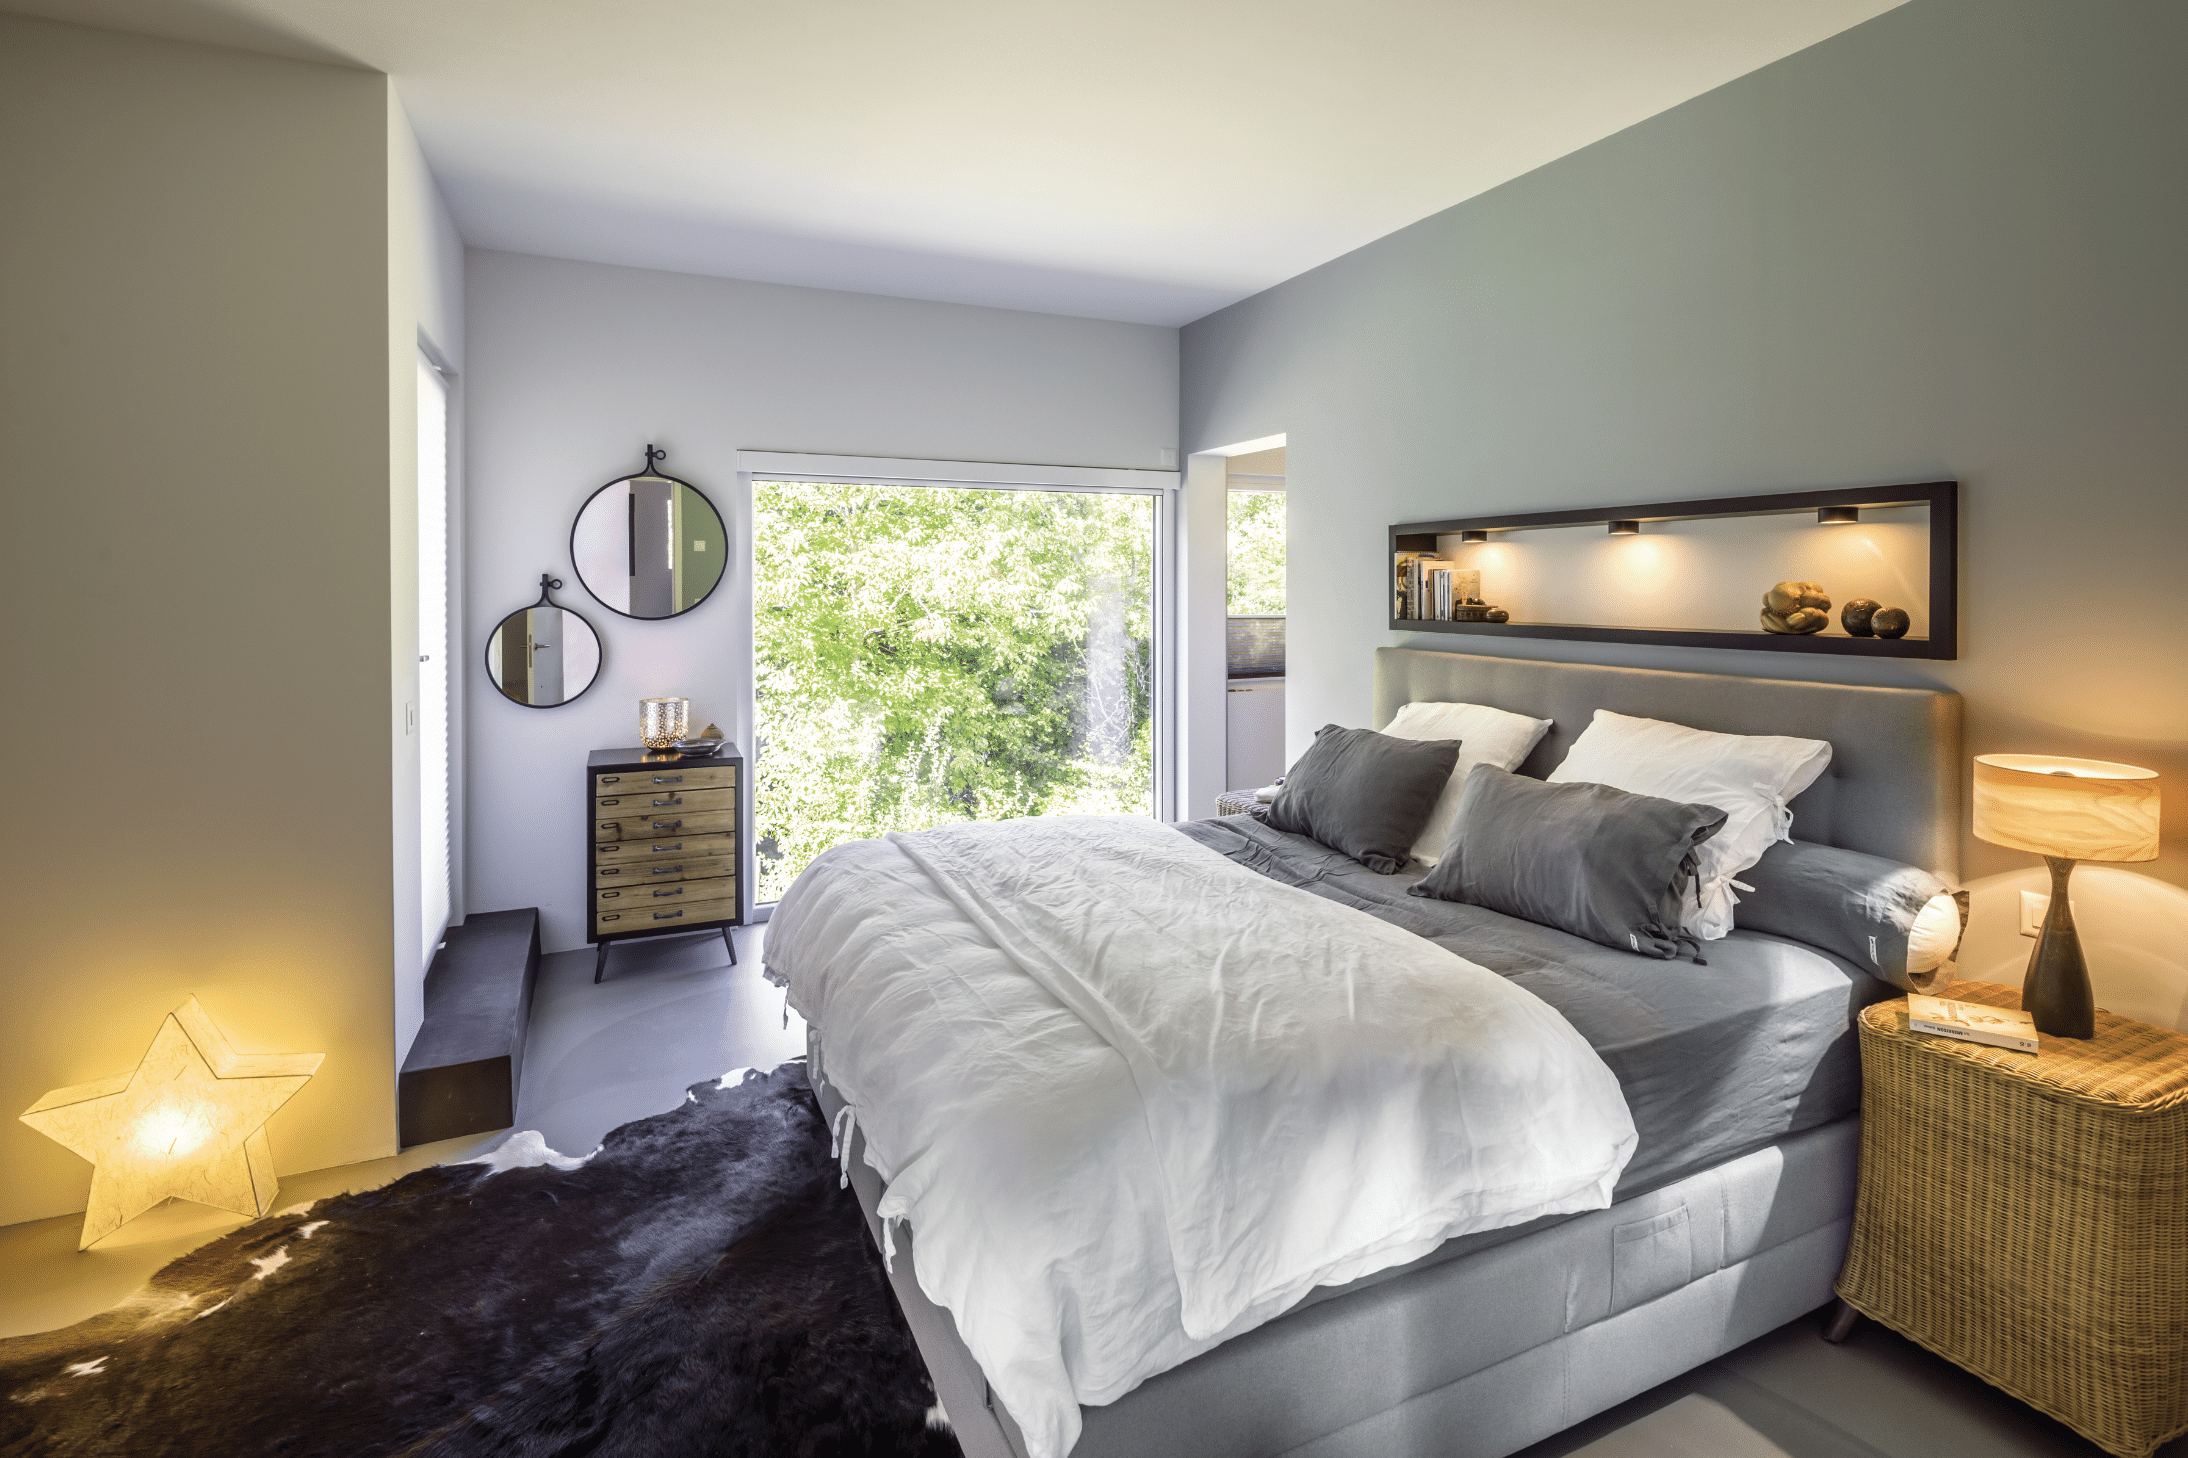 Regnauer zeigt ein Schlafzimmer mit einem Boxspringbett in grau, vielen Kissen, einem Beistelltisch aus Rattan und einem großen Fenster mit Blick ins Grüne.